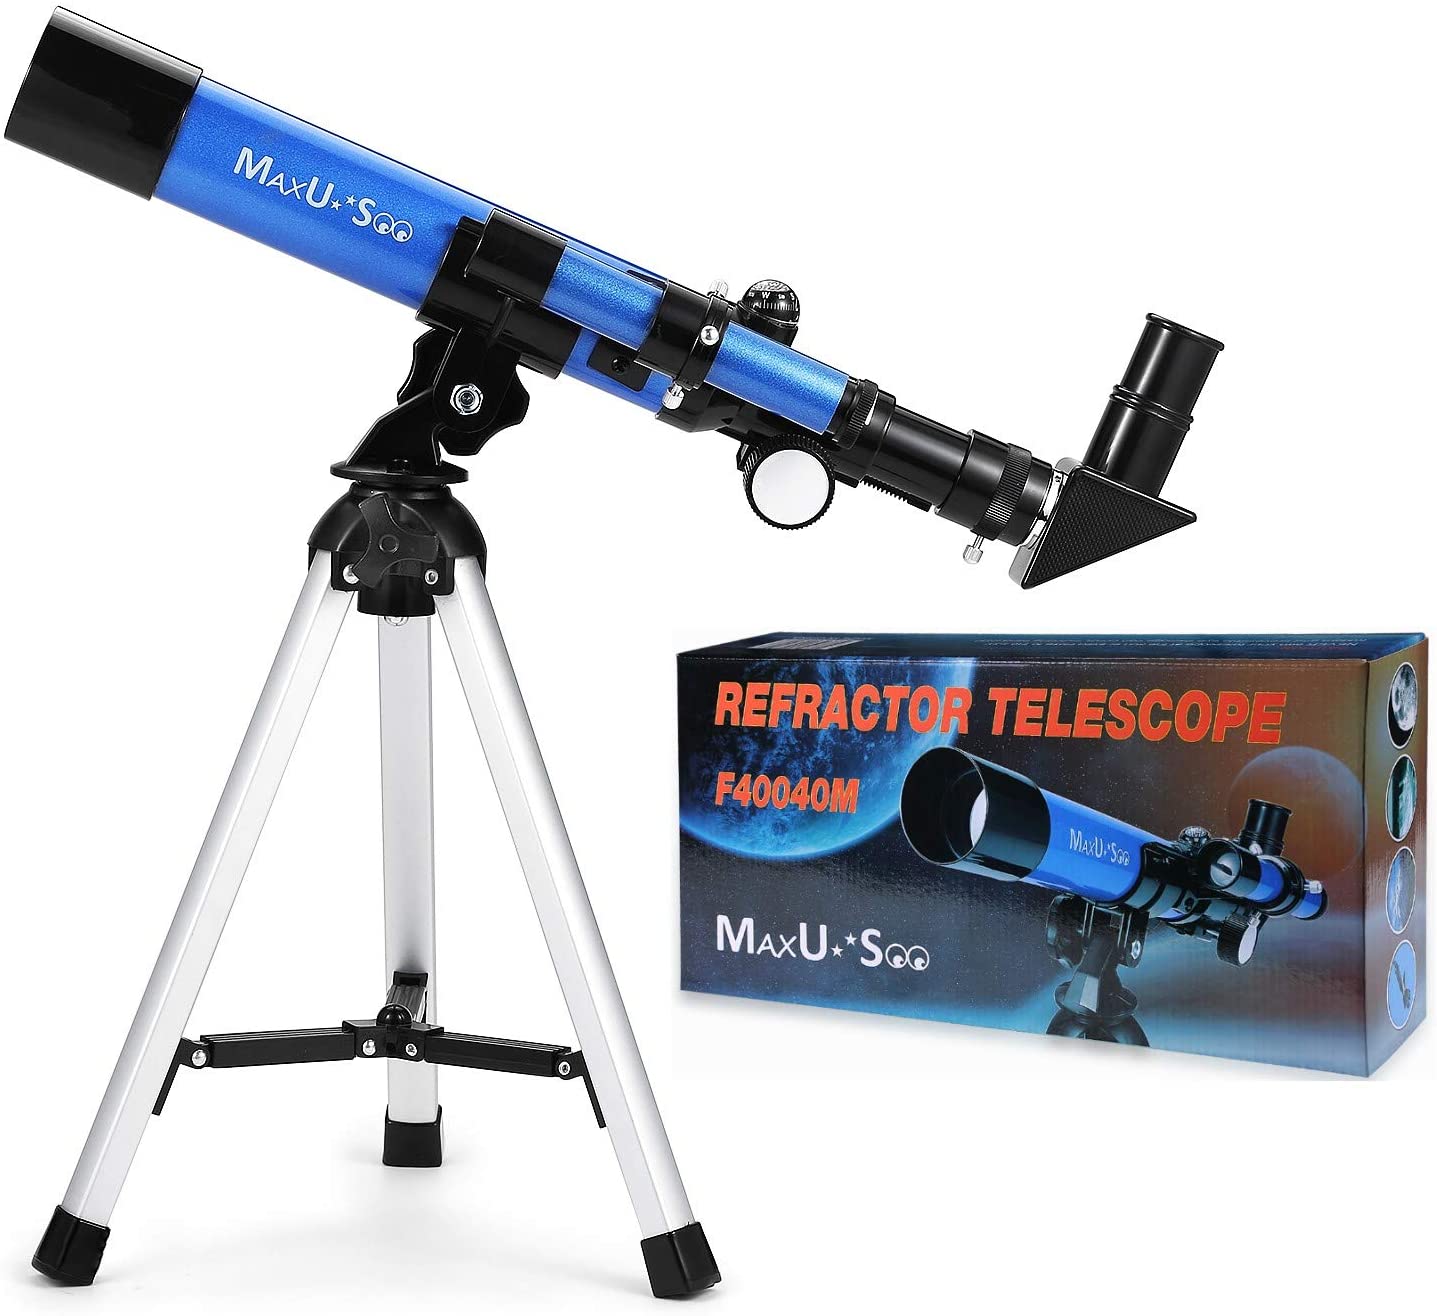  Telescopio para astronomía, telescopio para niños, telescopio  portátil, fácil de montar y usar, ideal para niños y adultos principiantes, telescopio  astronómico para luna, observación de estrellas (color: azul, tamaño: D) 